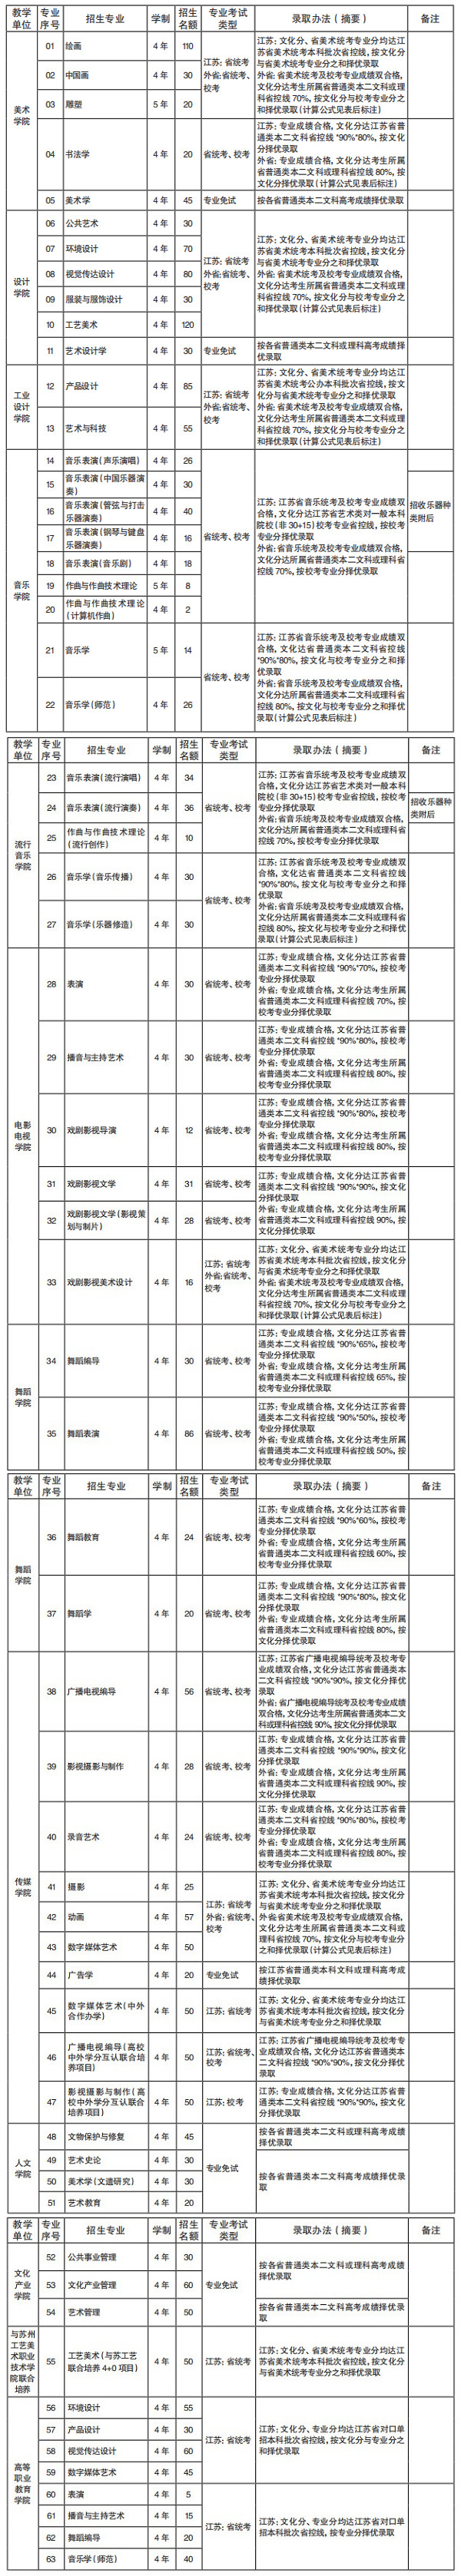 南京艺术学院招生名额及录取办法